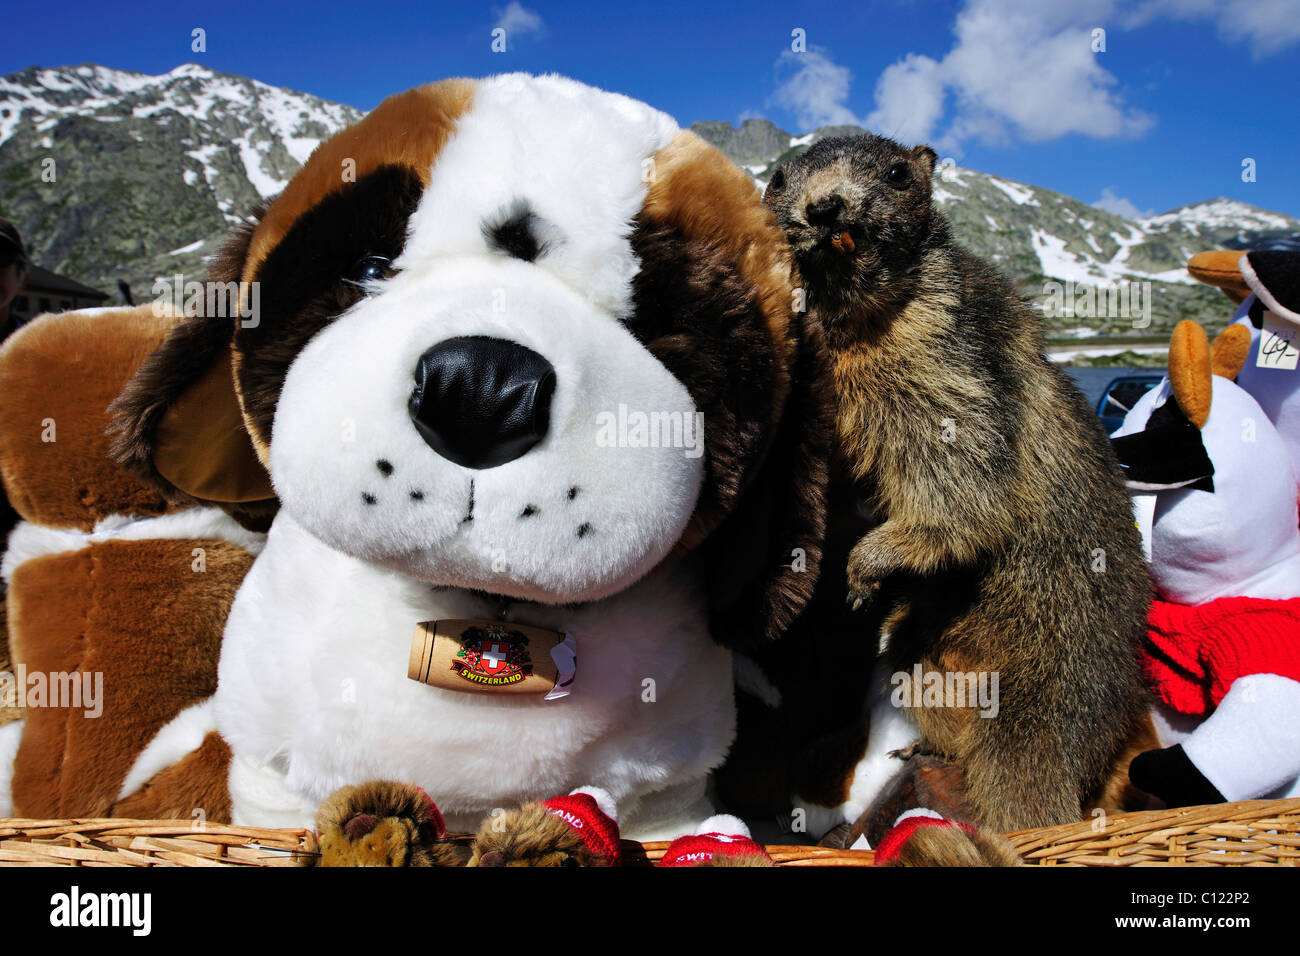 Plush St. Bernard dog and groundhog at the Gotthard Pass, Switzerland, Europe Stock Photo